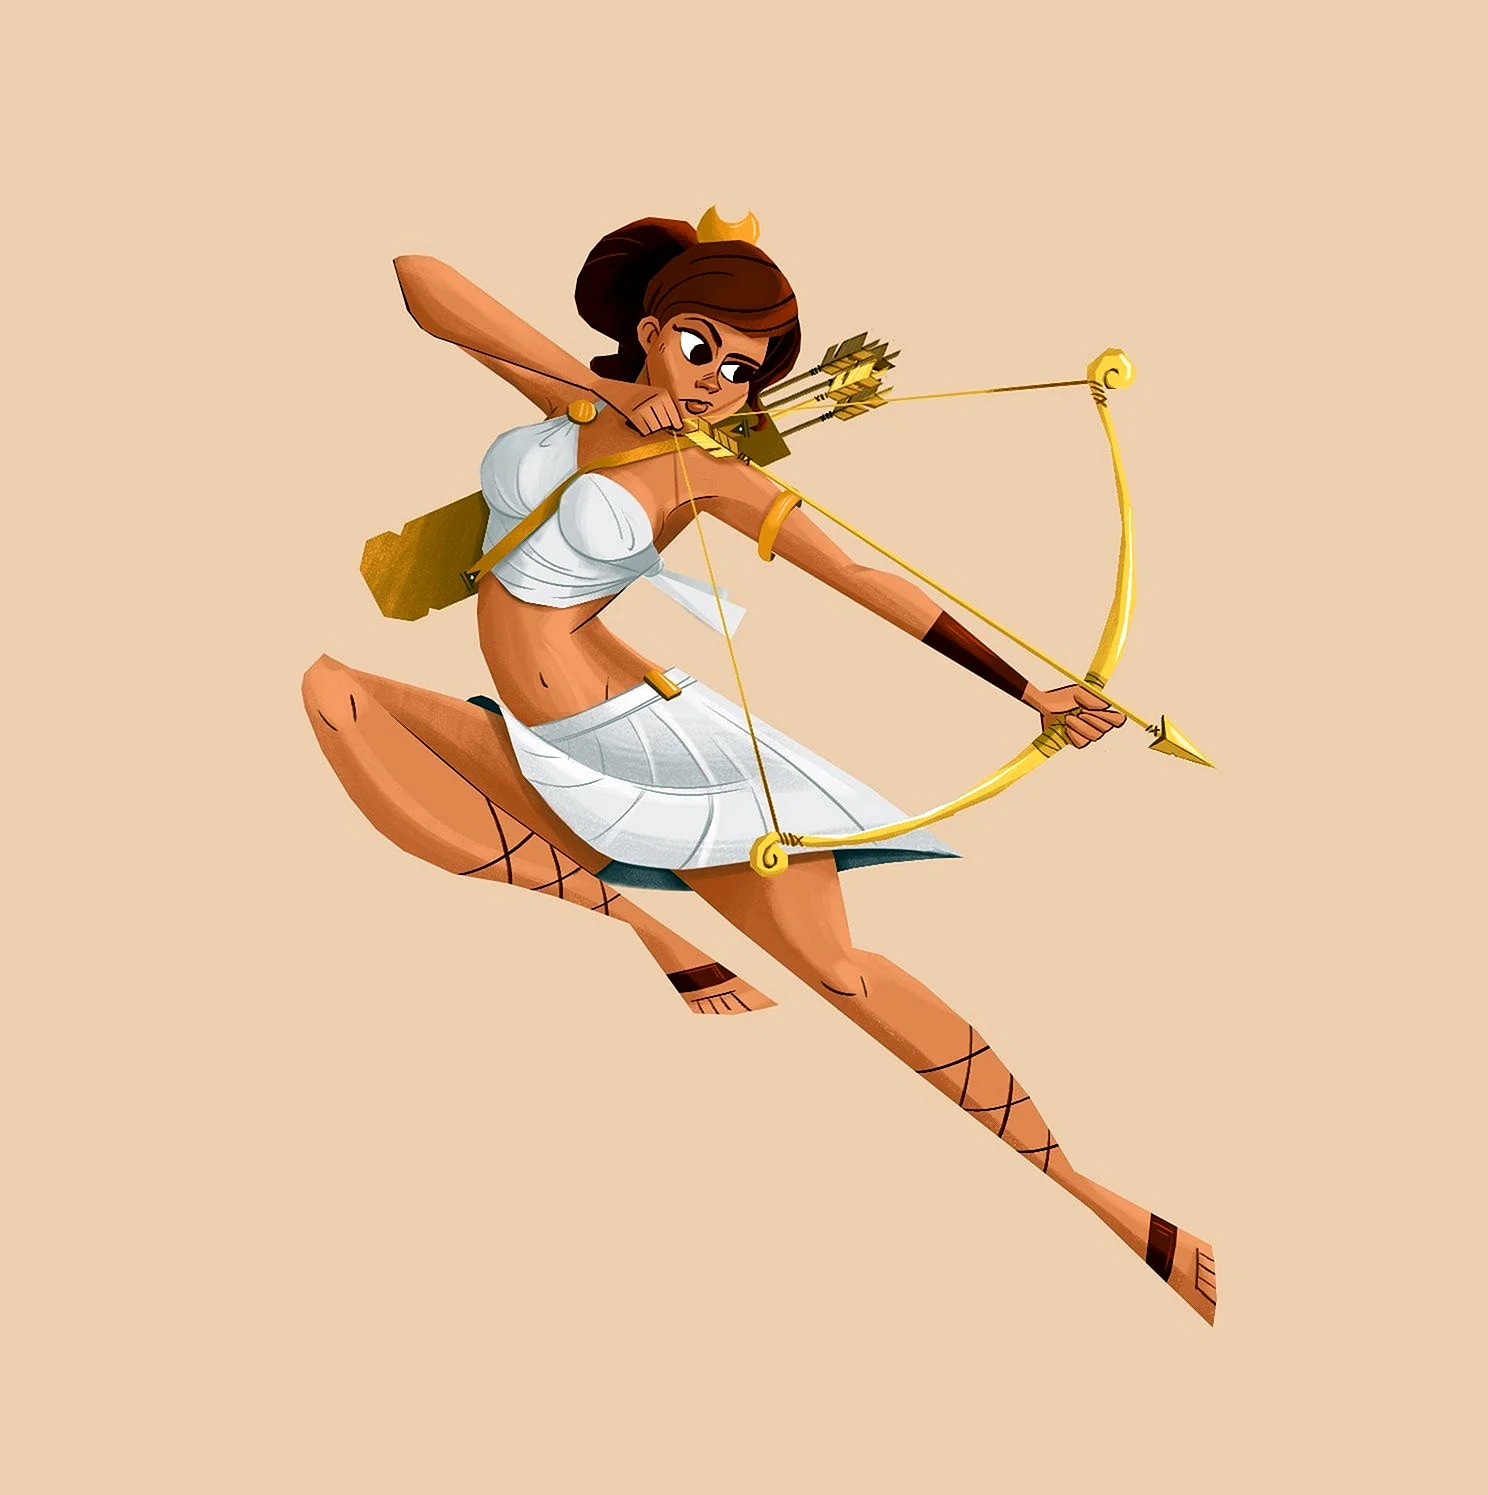 Артемида древнегреческая богиня